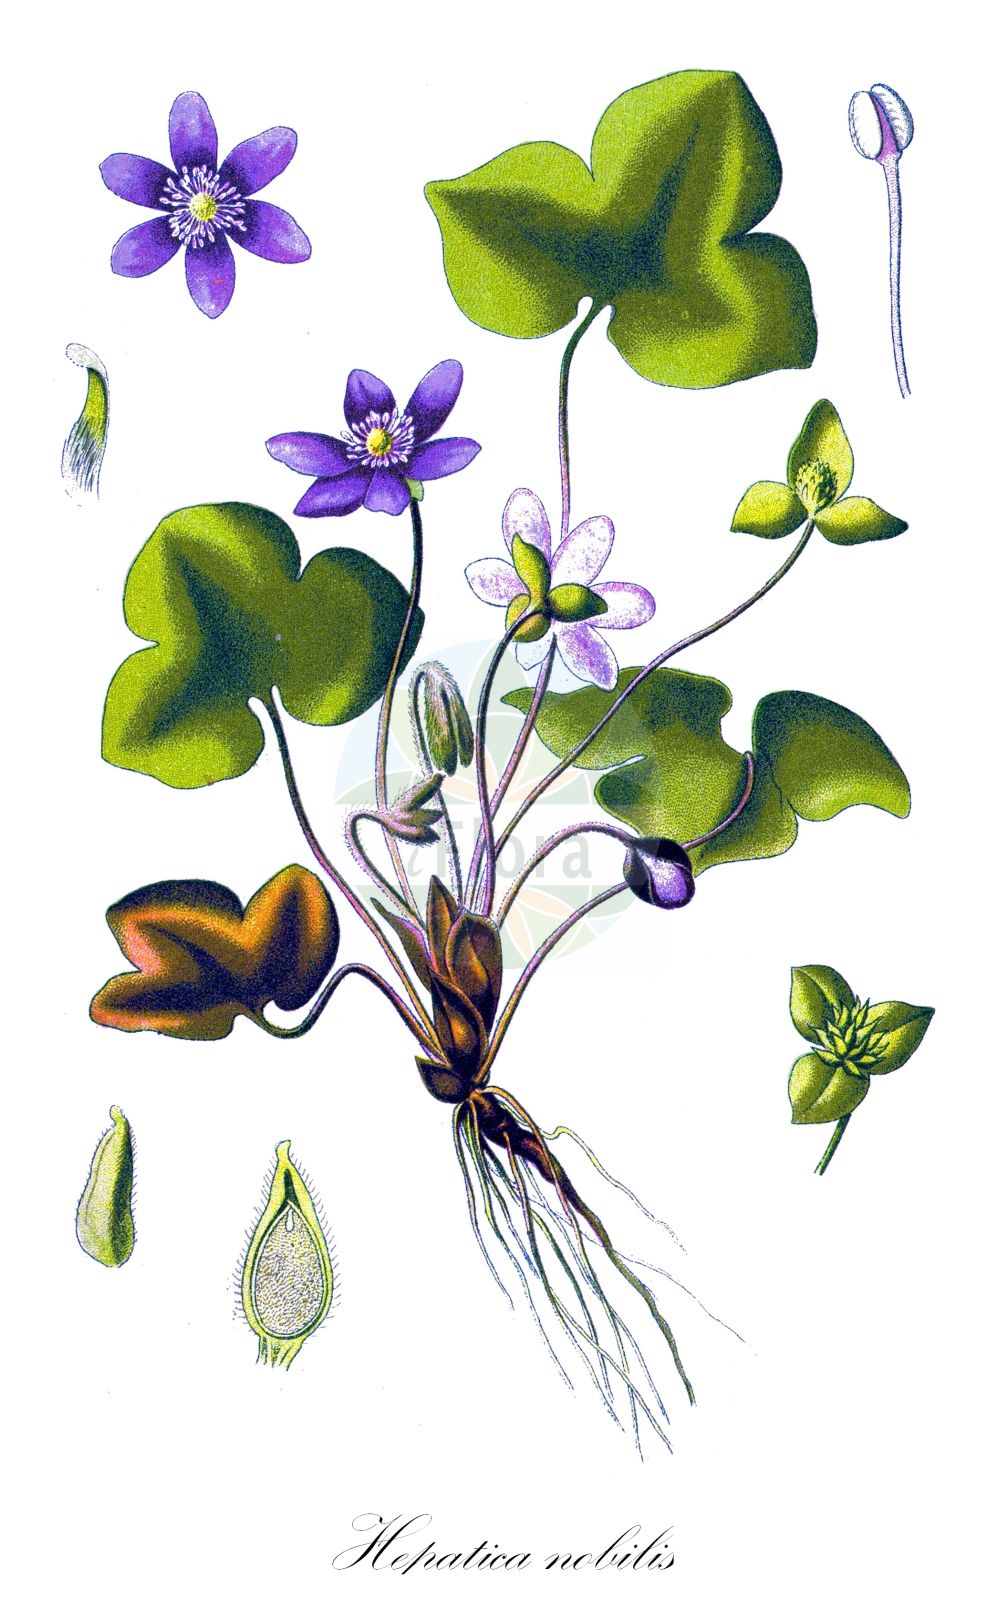 Historische Abbildung von Hepatica nobilis (Echtes Leberblümchen - Liverleaf). Das Bild zeigt Blatt, Bluete, Frucht und Same. ---- Historical Drawing of Hepatica nobilis (Echtes Leberblümchen - Liverleaf). The image is showing leaf, flower, fruit and seed.(Hepatica nobilis,Echtes Leberblümchen,Liverleaf,Anemone hepatica,Hepatica nobilis,Hepatica triloba,Echtes Leberbluemchen,Leberbluemchen,Liverleaf,Herb Trinity,Liverwort,Hepatica,Leberblümchen,Hepatica,Ranunculaceae,Hahnenfußgewächse,Buttercup family,Blatt,Bluete,Frucht,Same,leaf,flower,fruit,seed,Thomé (1885))